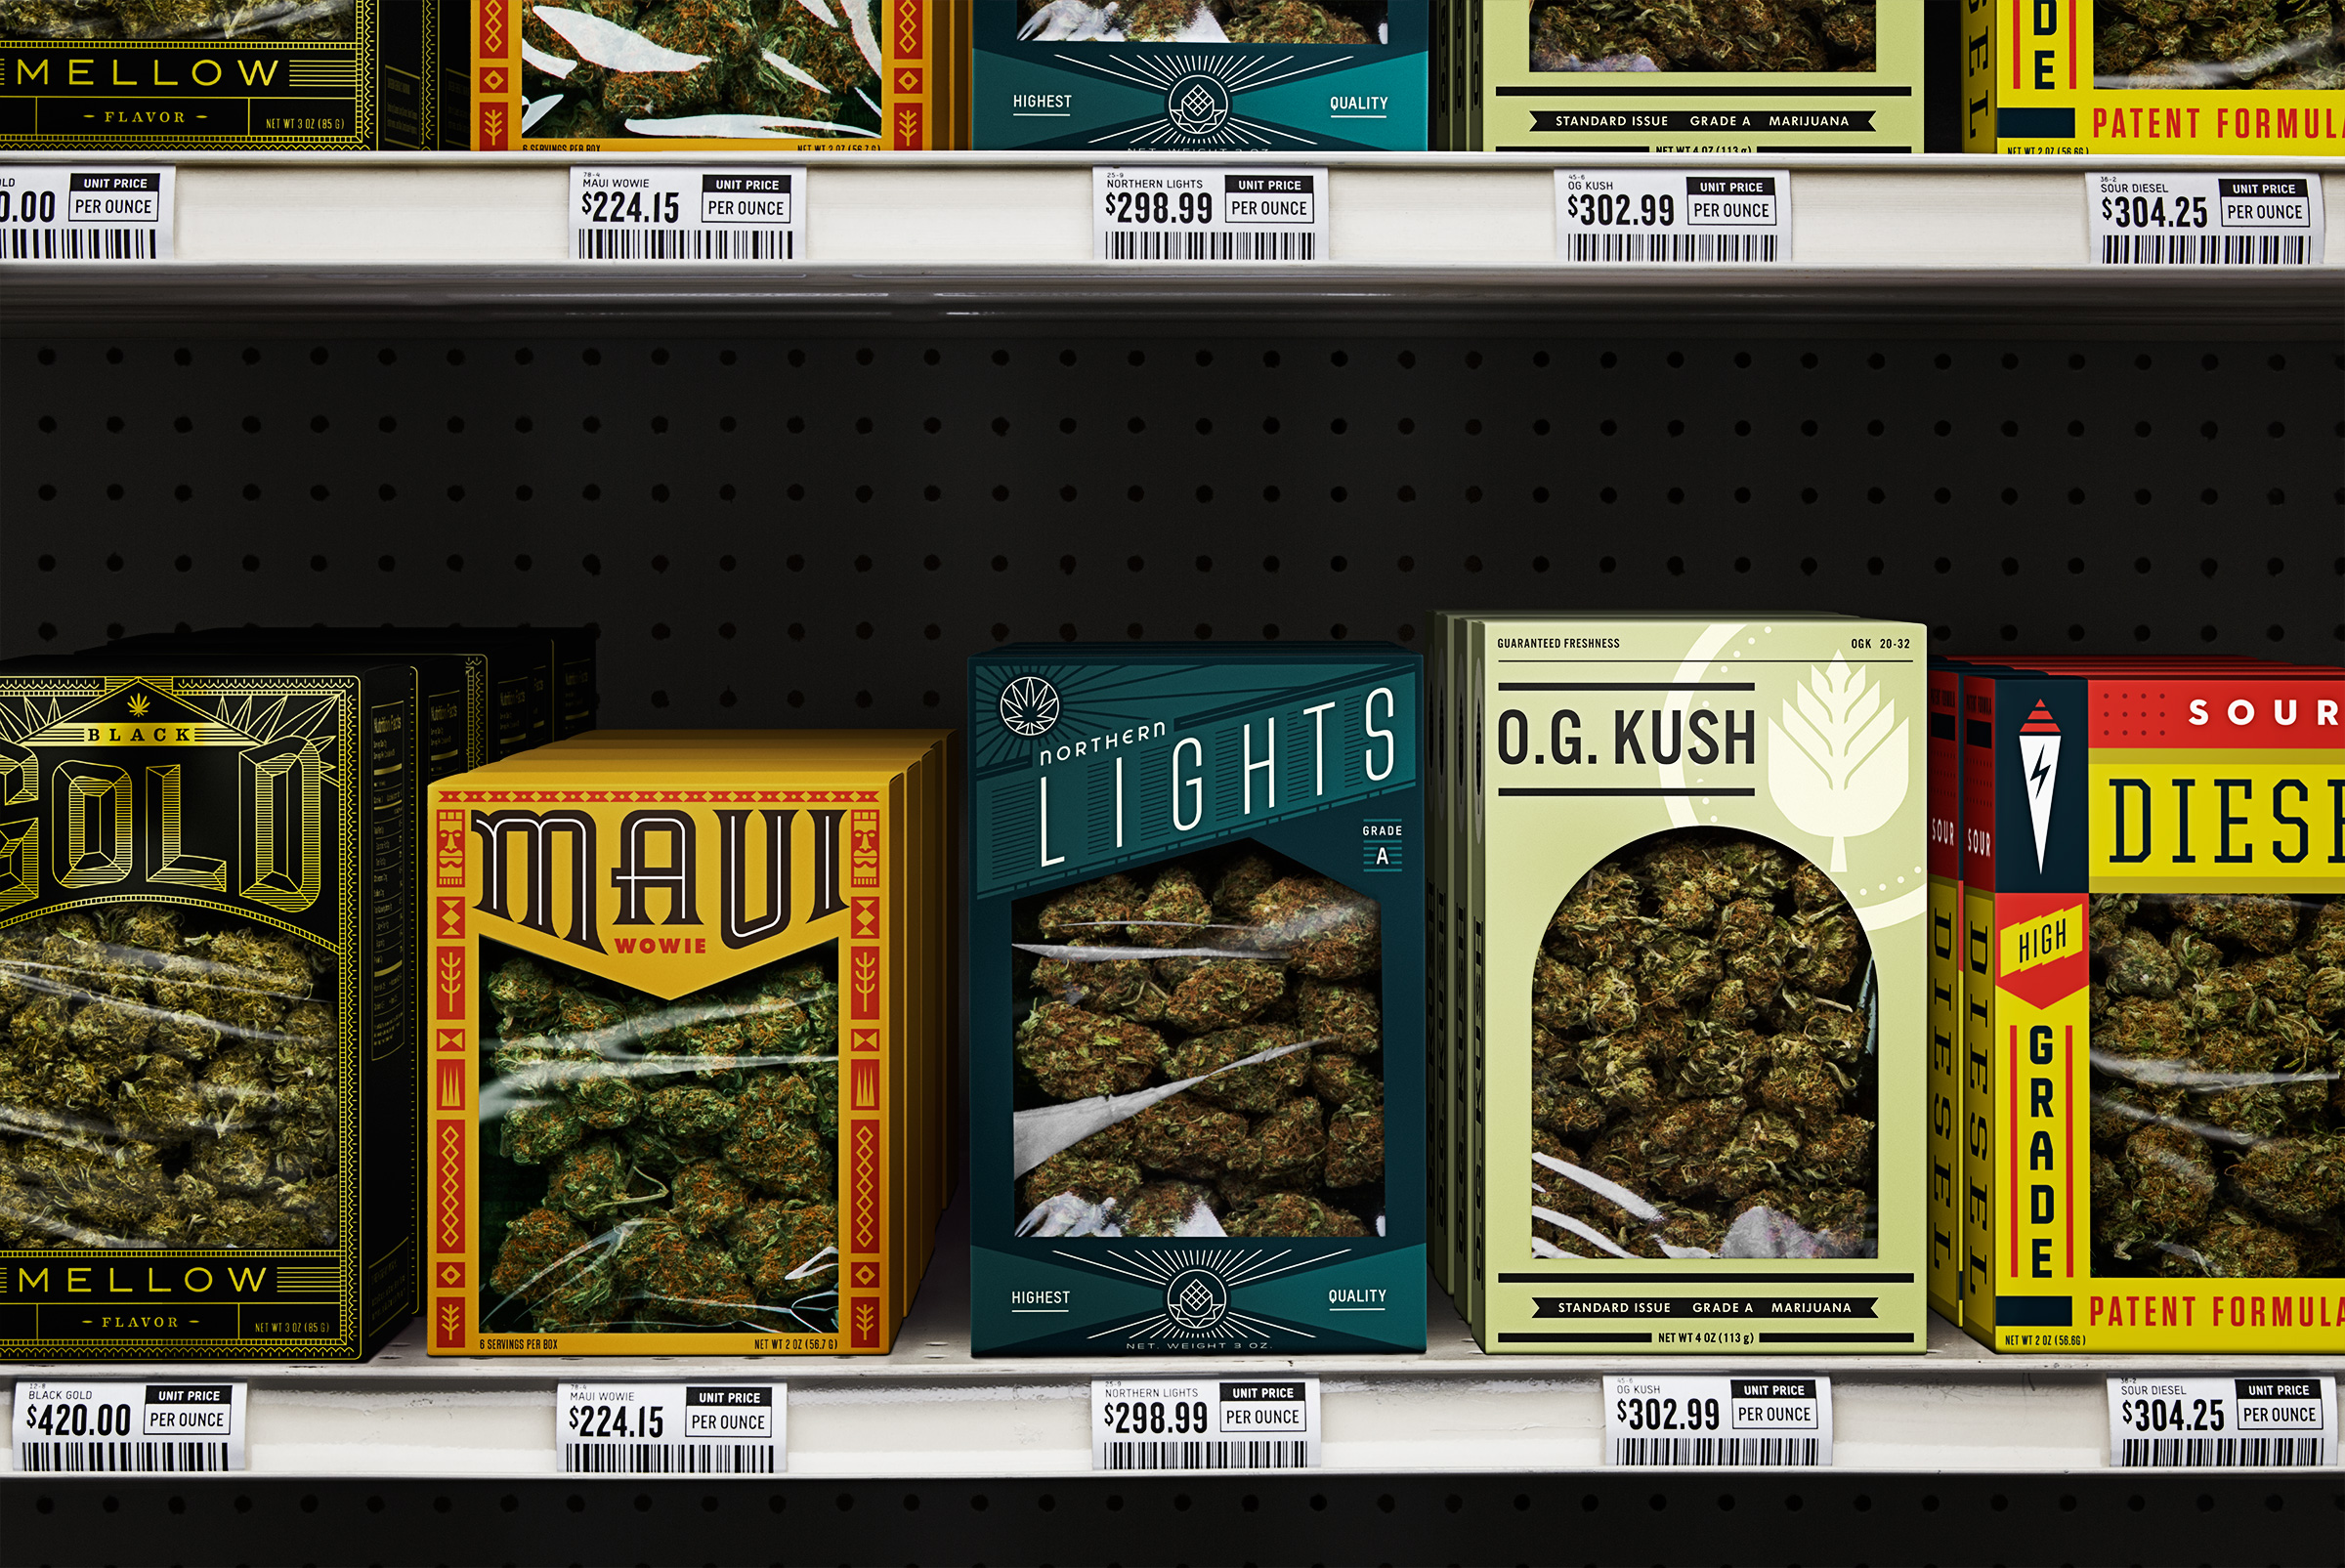 Marijuana, aisle 5